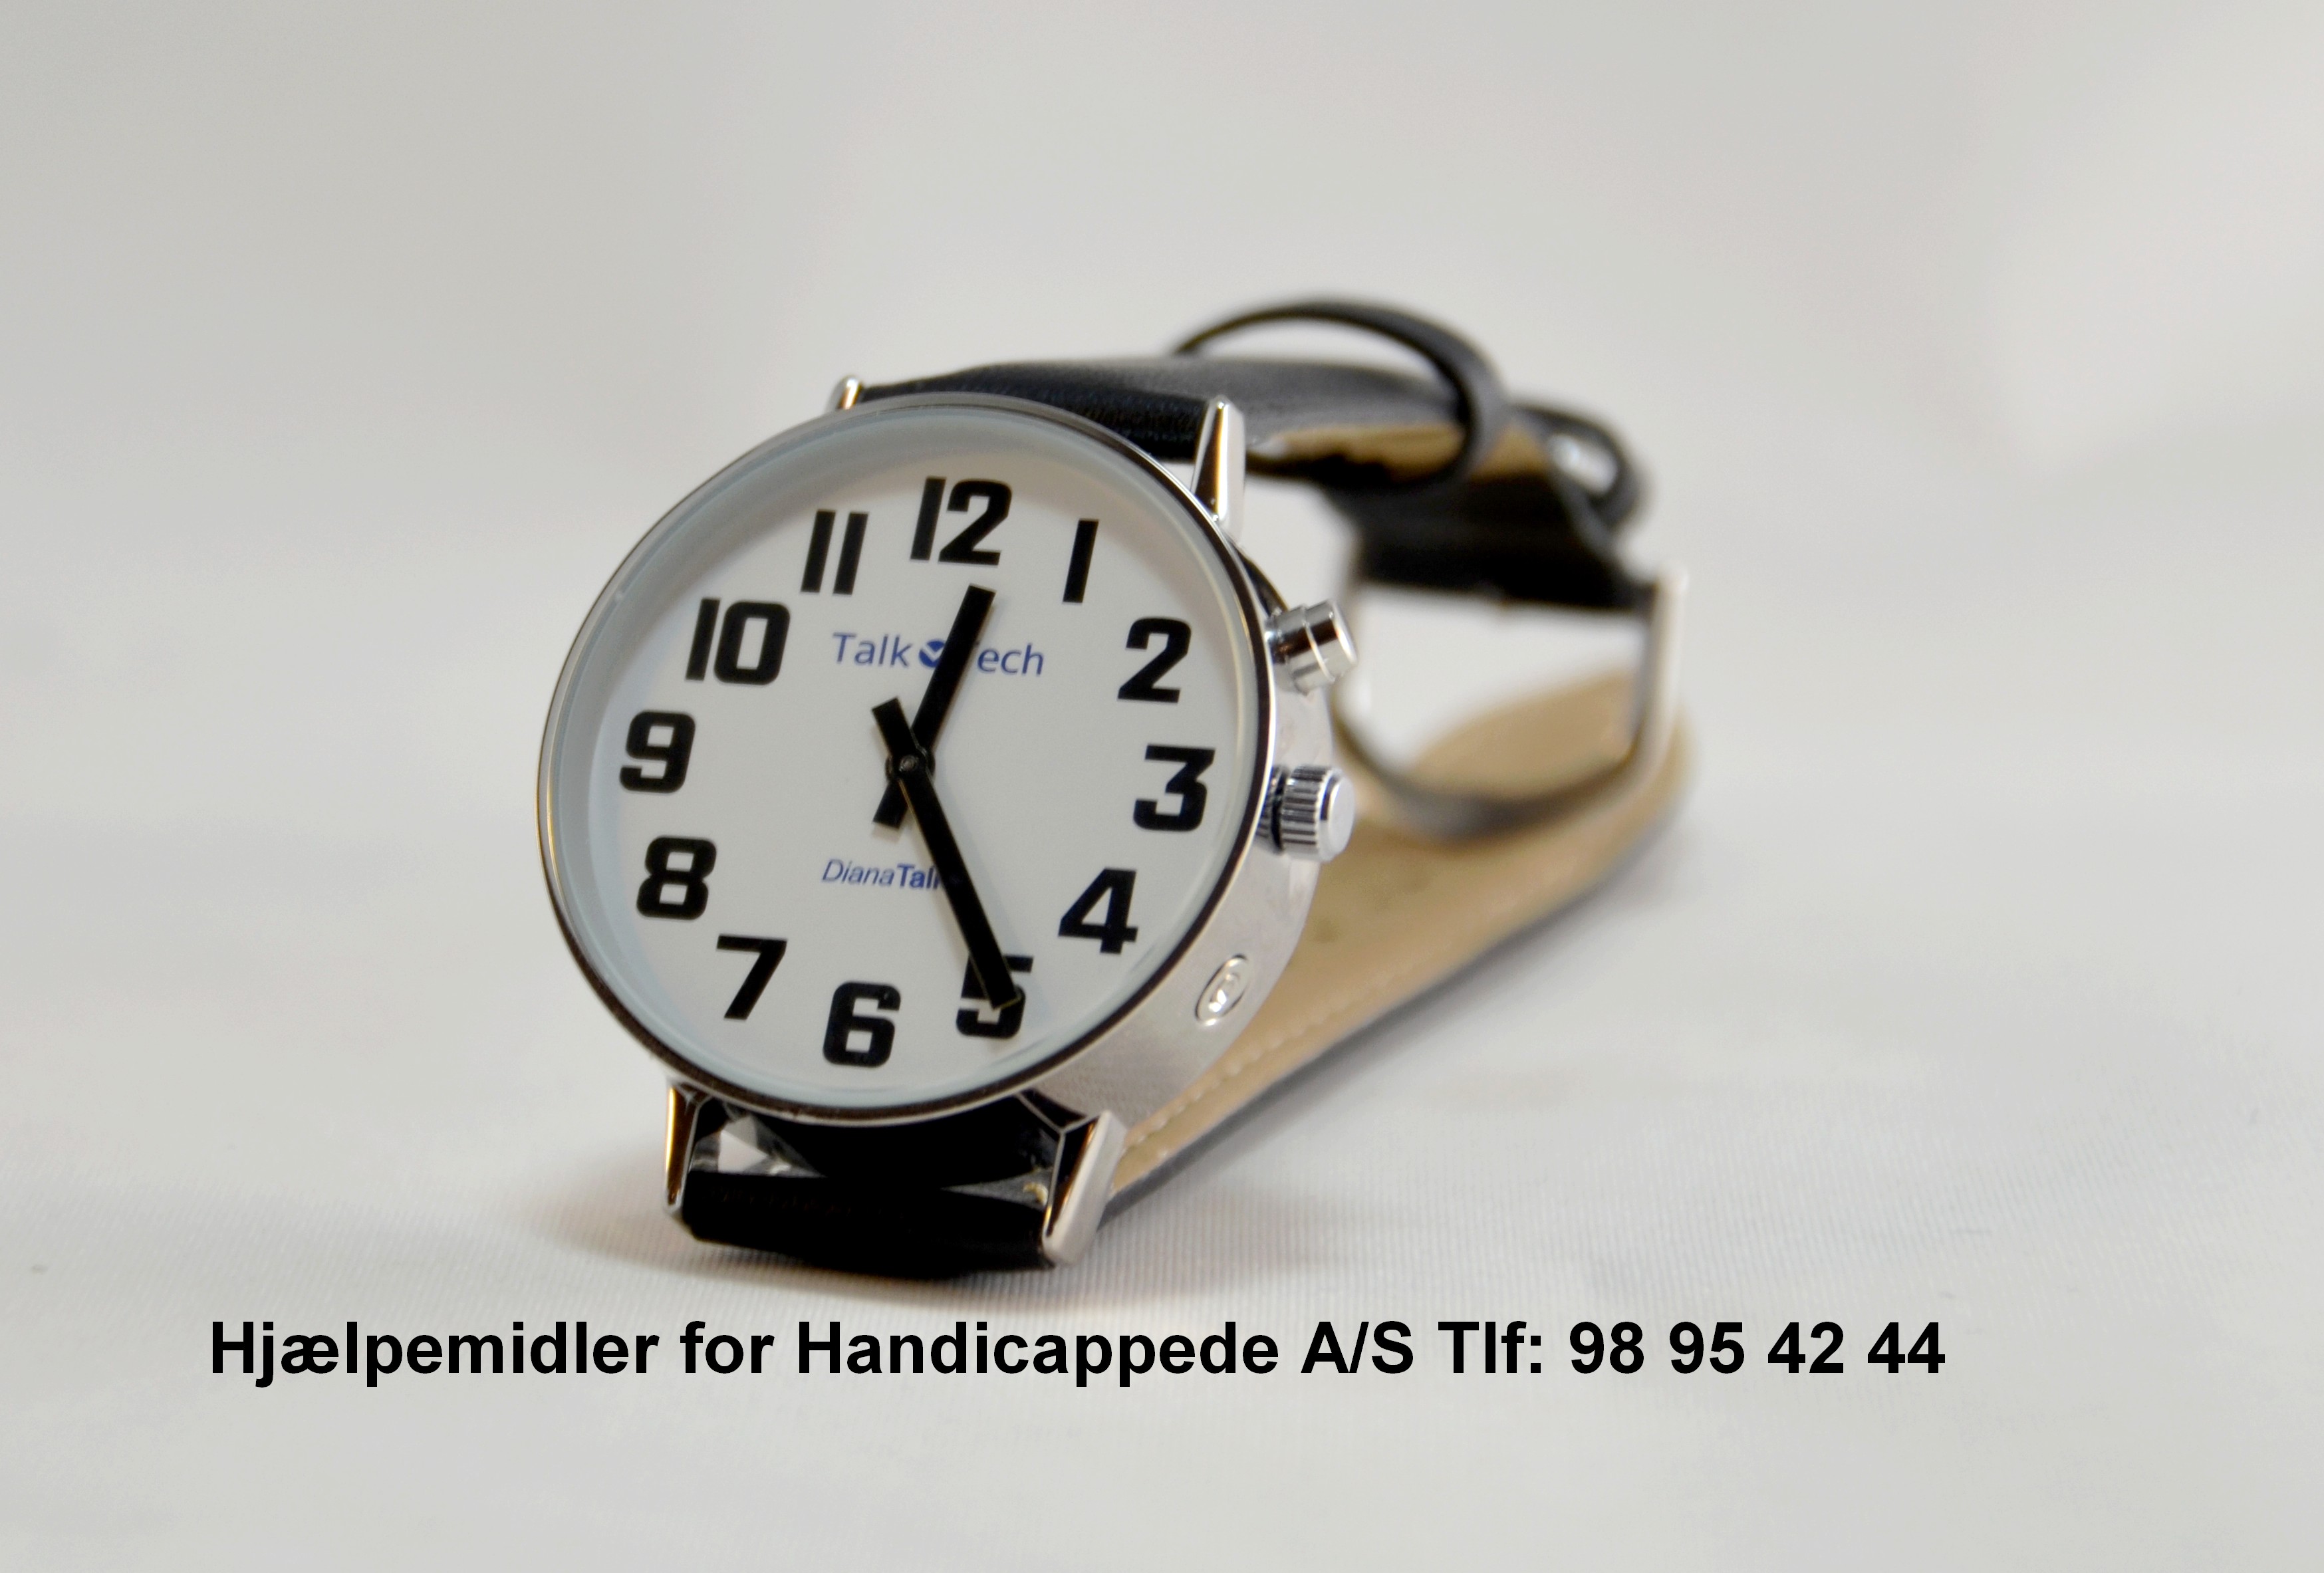 Tilsvarende Mary nedadgående Dansk talende armbåndsur DianaTalks Prime fra HJÆLPEMIDLER FOR HANDICAPPEDE  (HFH) - Hjælpemiddelbasen